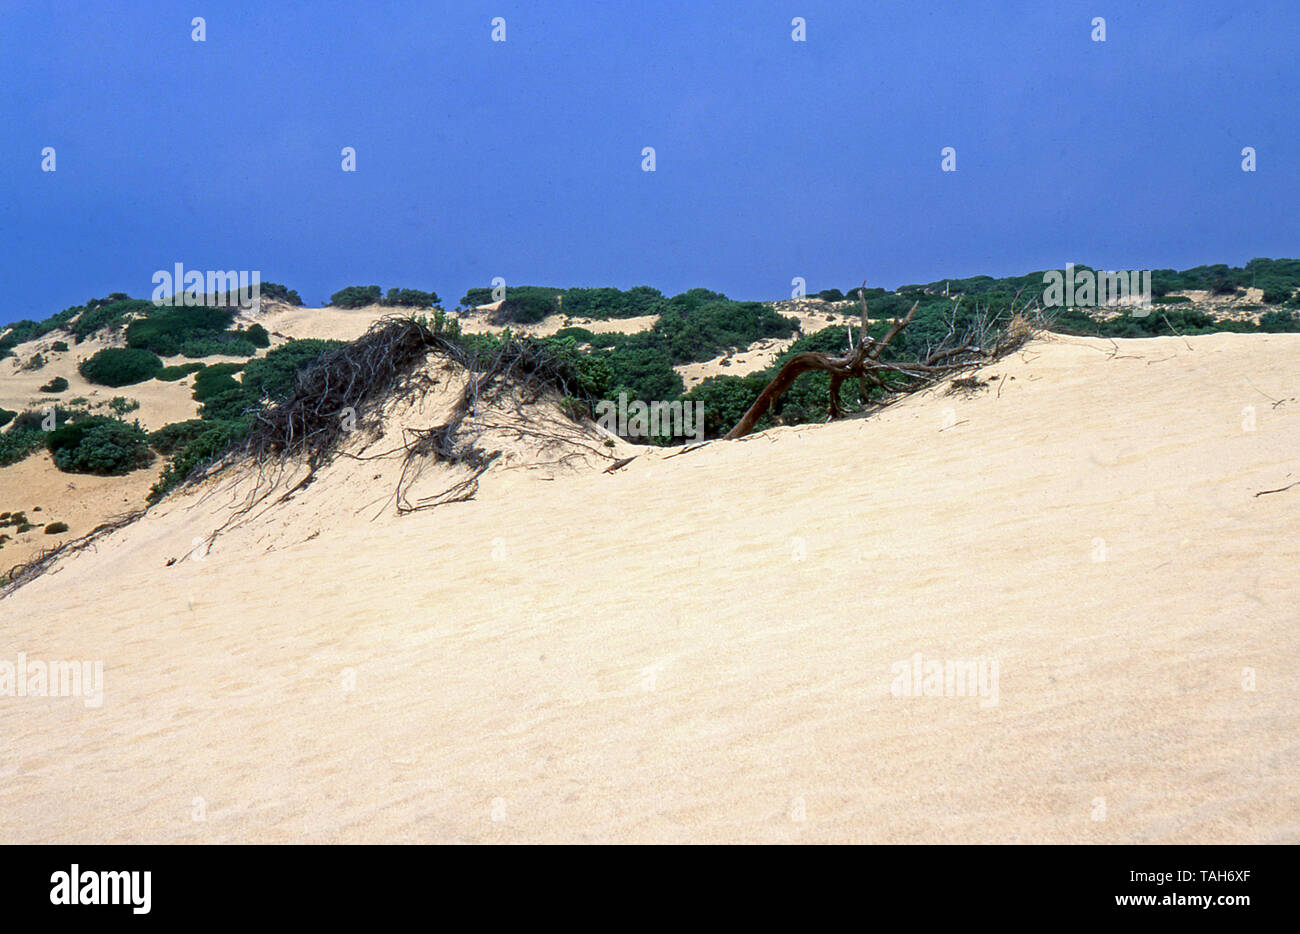 Dünen von Piscinas im Süden von Sardinien (von Fujichrome Astia gescannt) Stockfoto